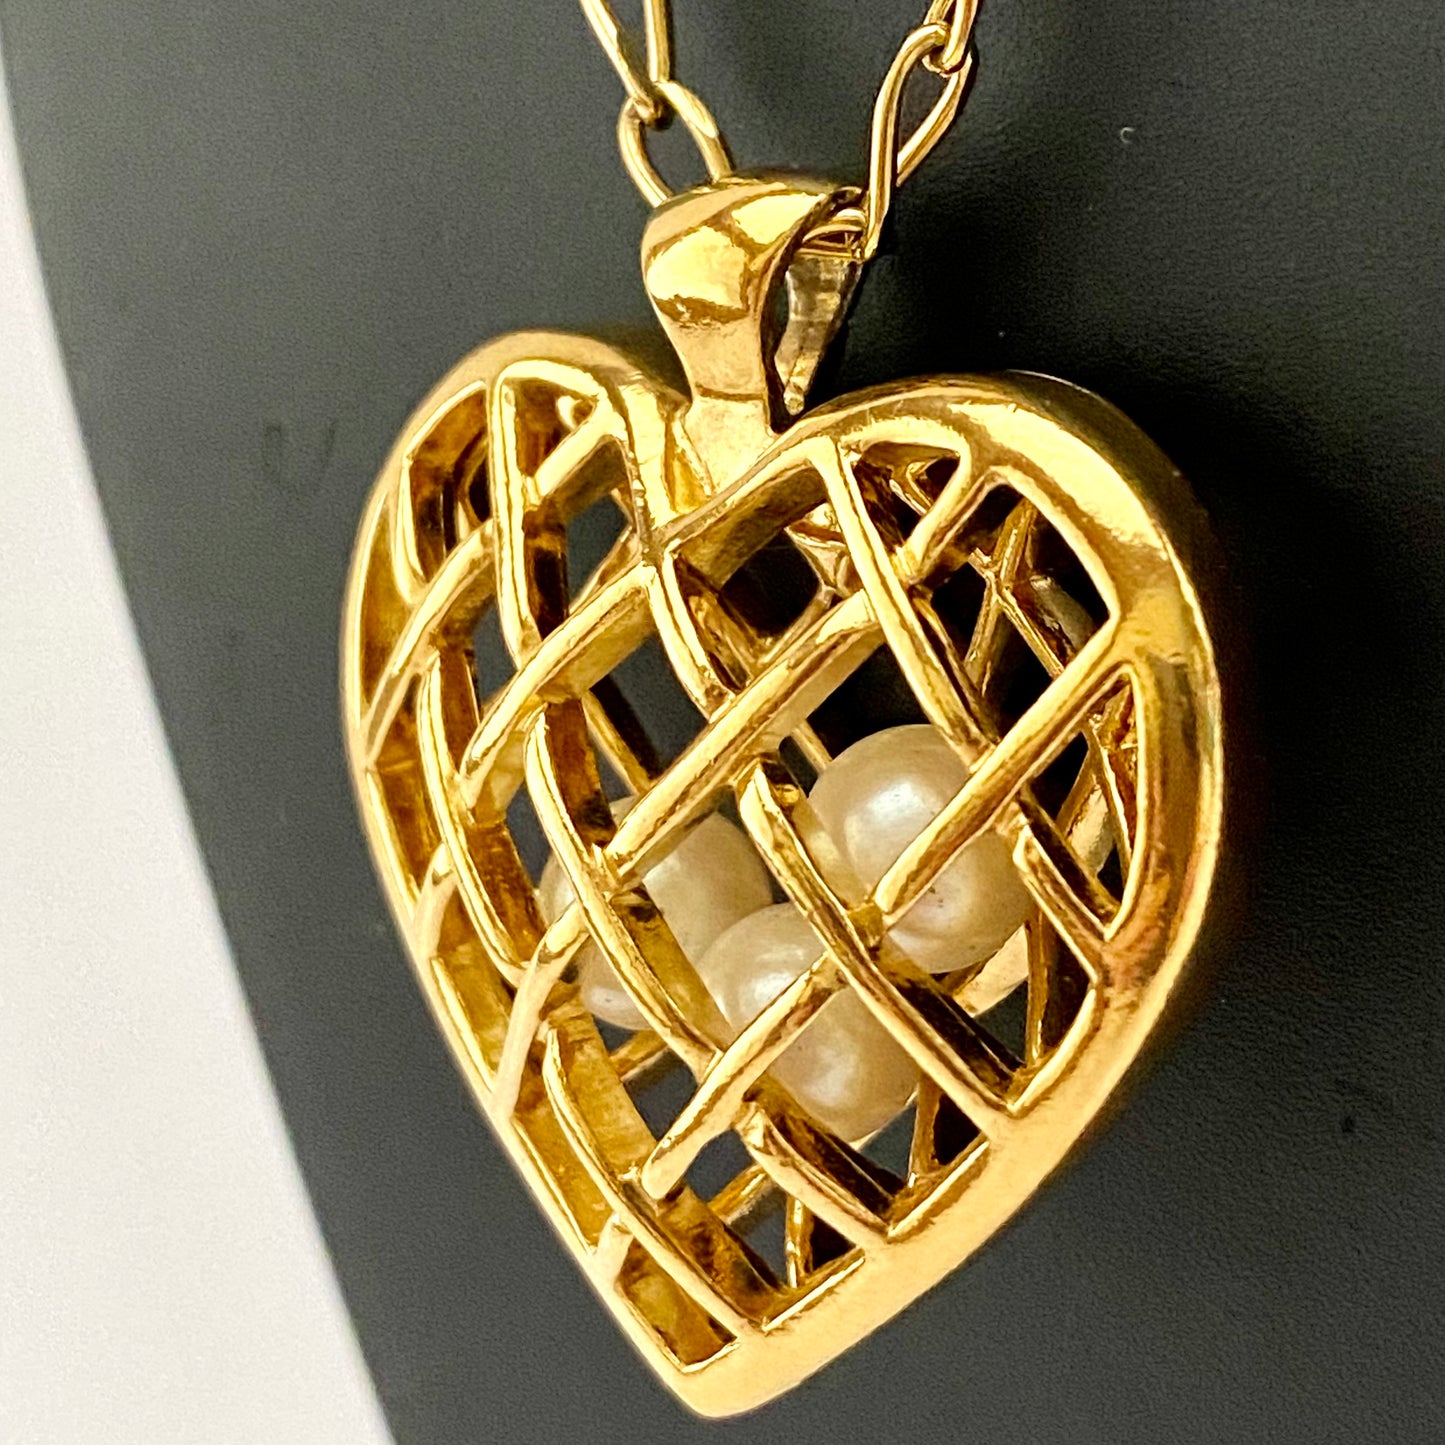 1993 Avon Capture Your Heart Pendant Necklace